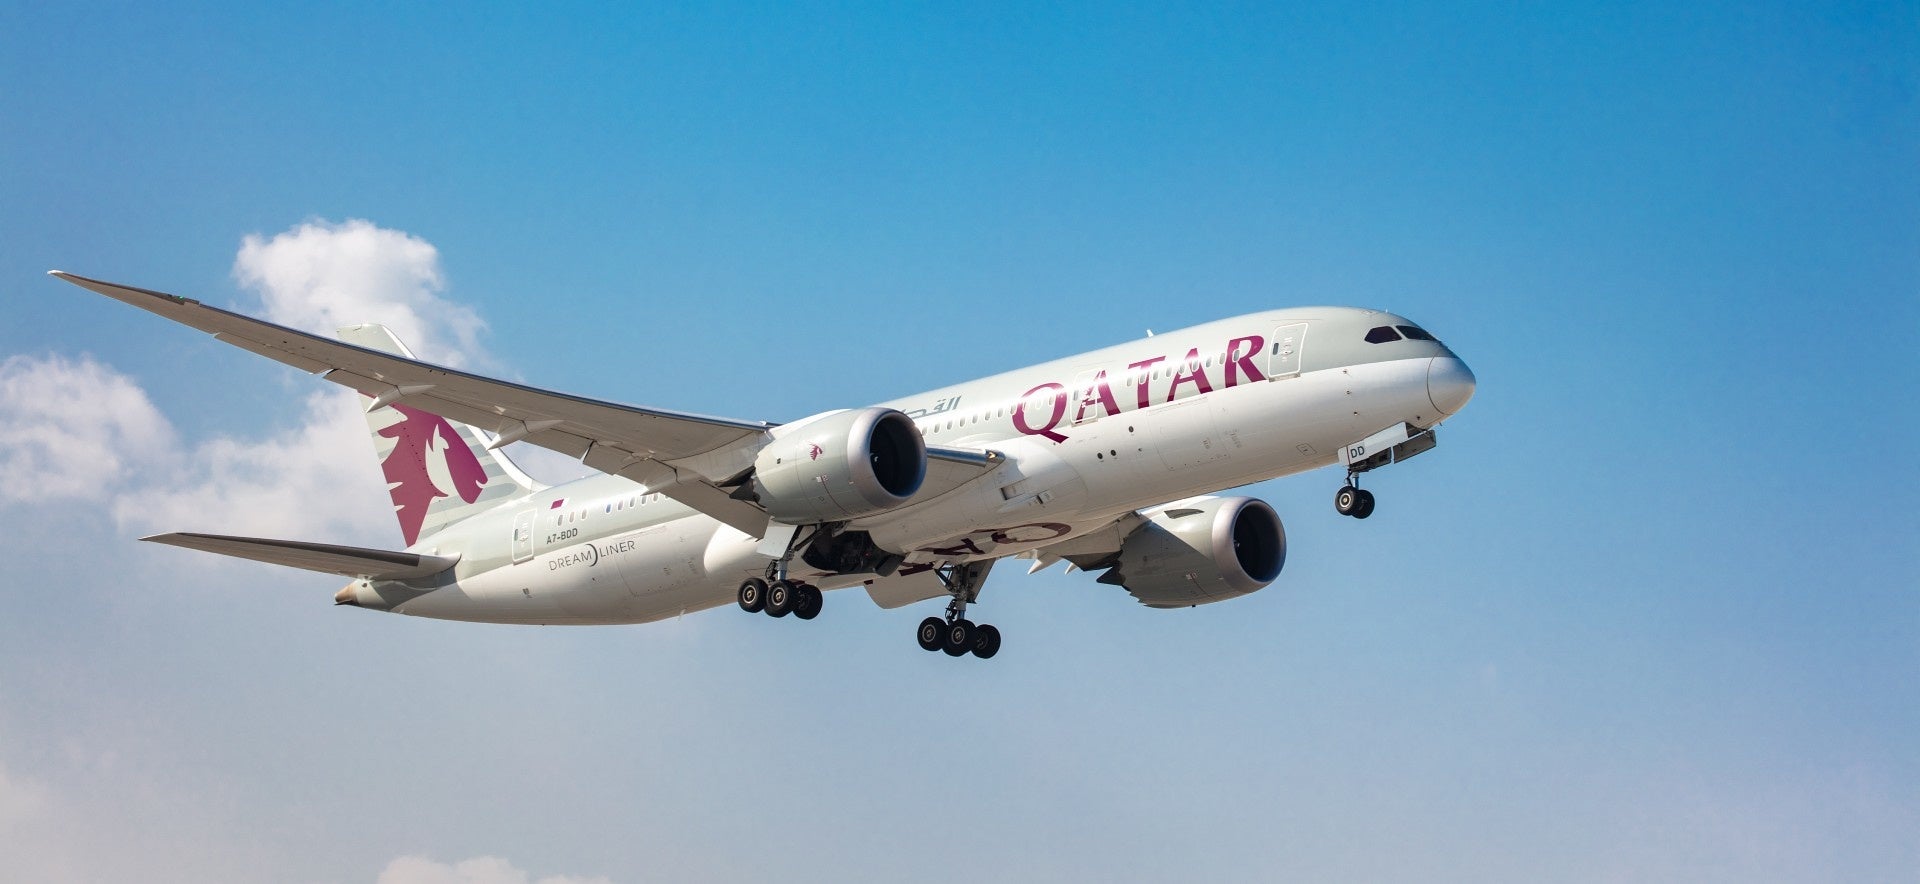 カタール航空、ゲボ社と提携 2,500万米ガロンの認証済みSAFを購入